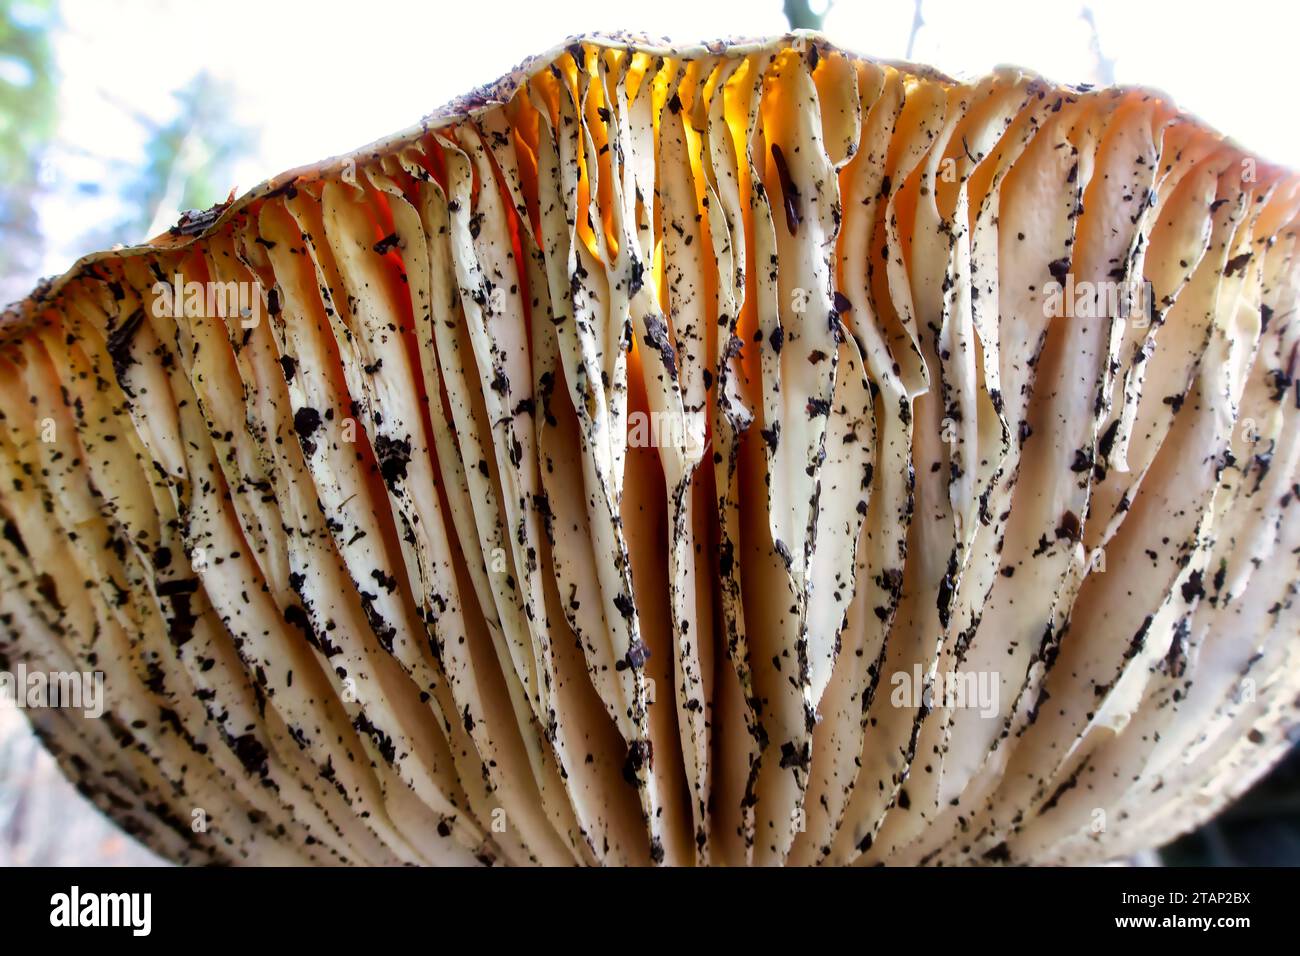 champignons cultivés naturellement dans un environnement naturel dans la forêt avec une atmosphère automnale et vieux bois, mousse et feuilles, image rapprochée Banque D'Images